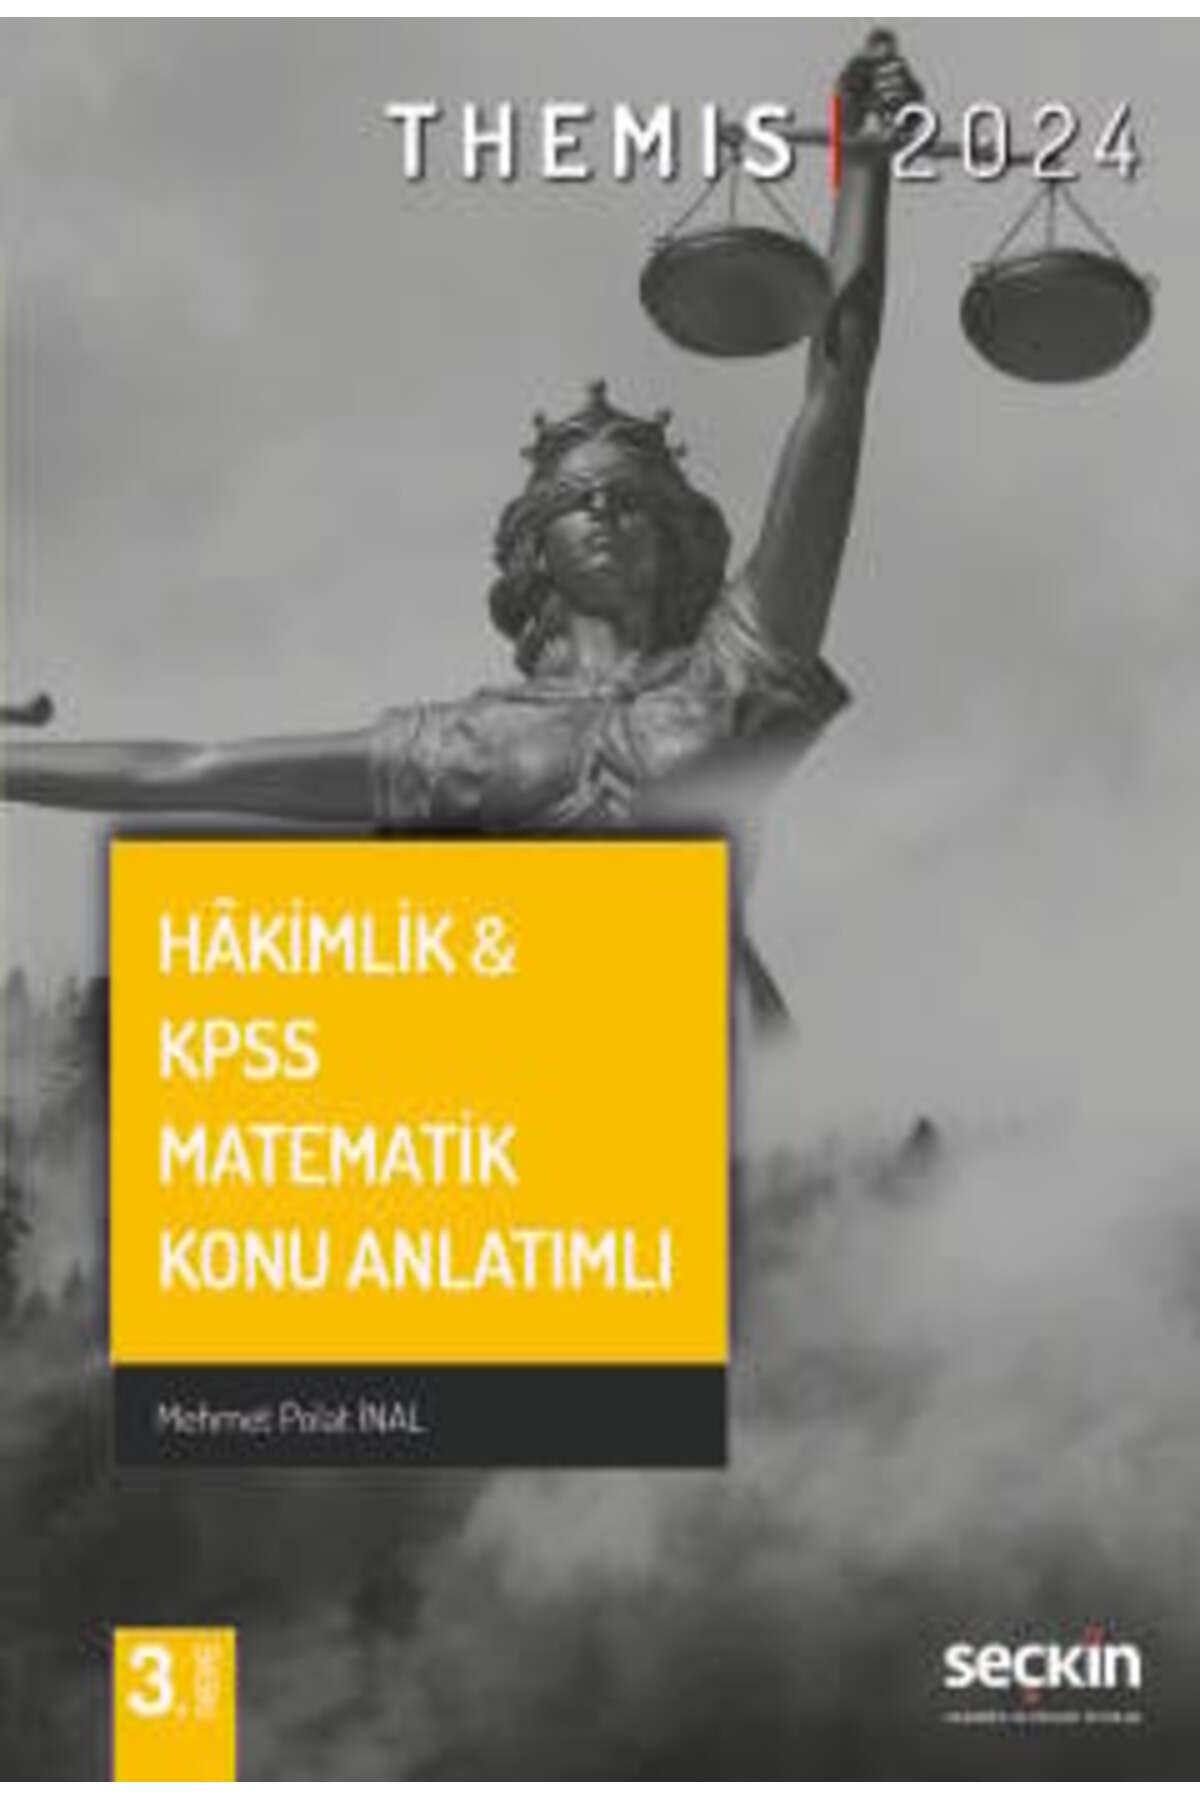 Seçkin Yayıncılık THEMIS – Hâkimlik & KPSS Matematik Konu Anlatımlı Mehmet Polat İnal